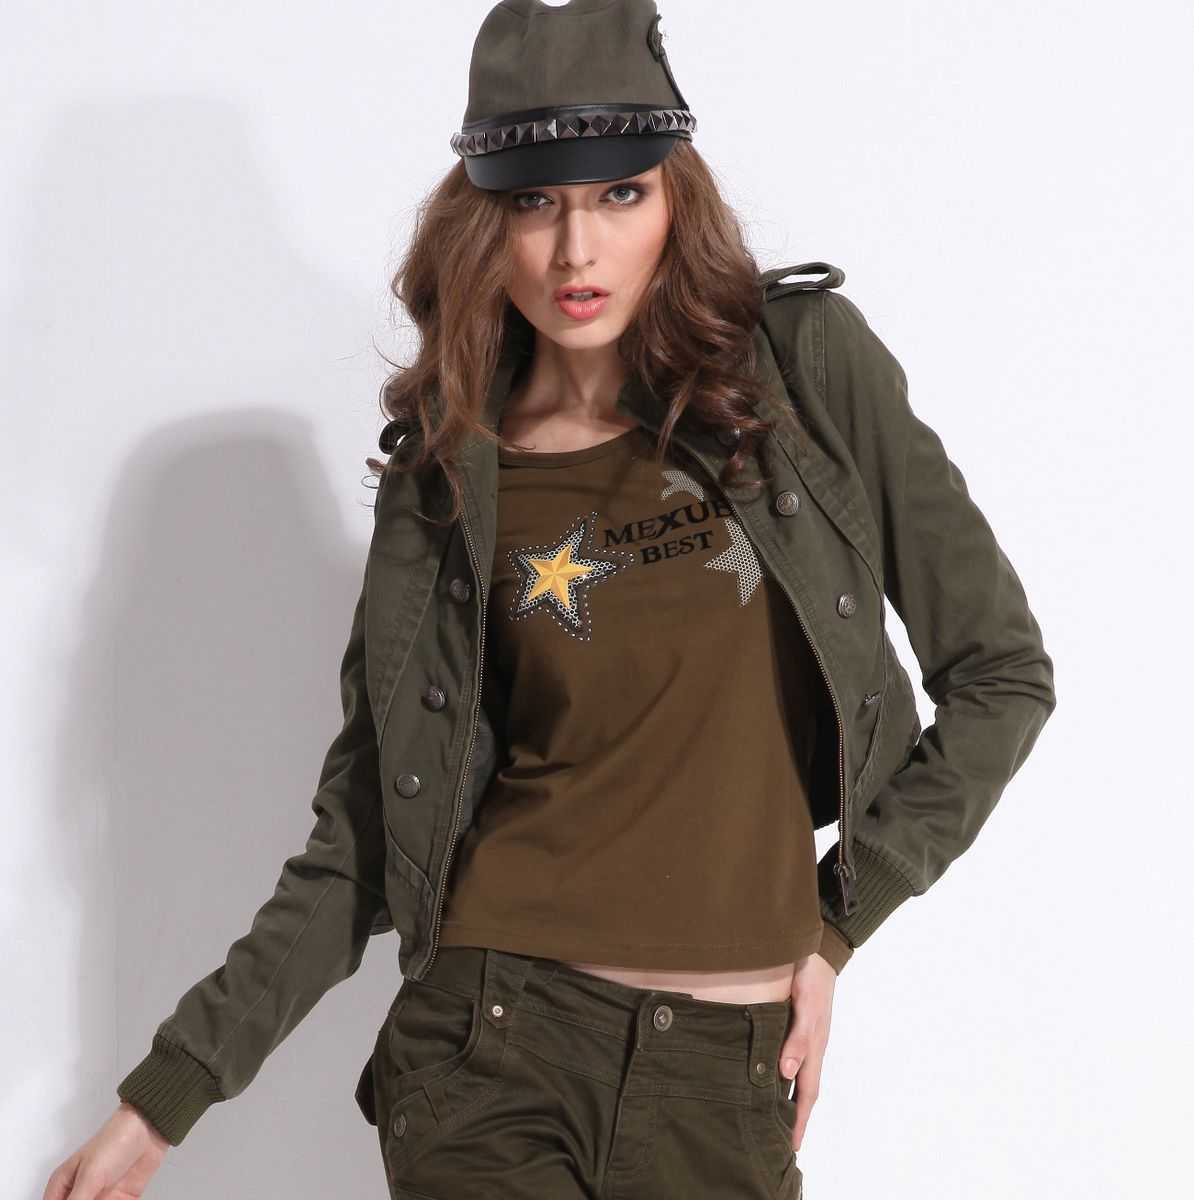 Мода-2019: стиль милитари в женской одежде | ladycharm.net - женский онлайн журнал